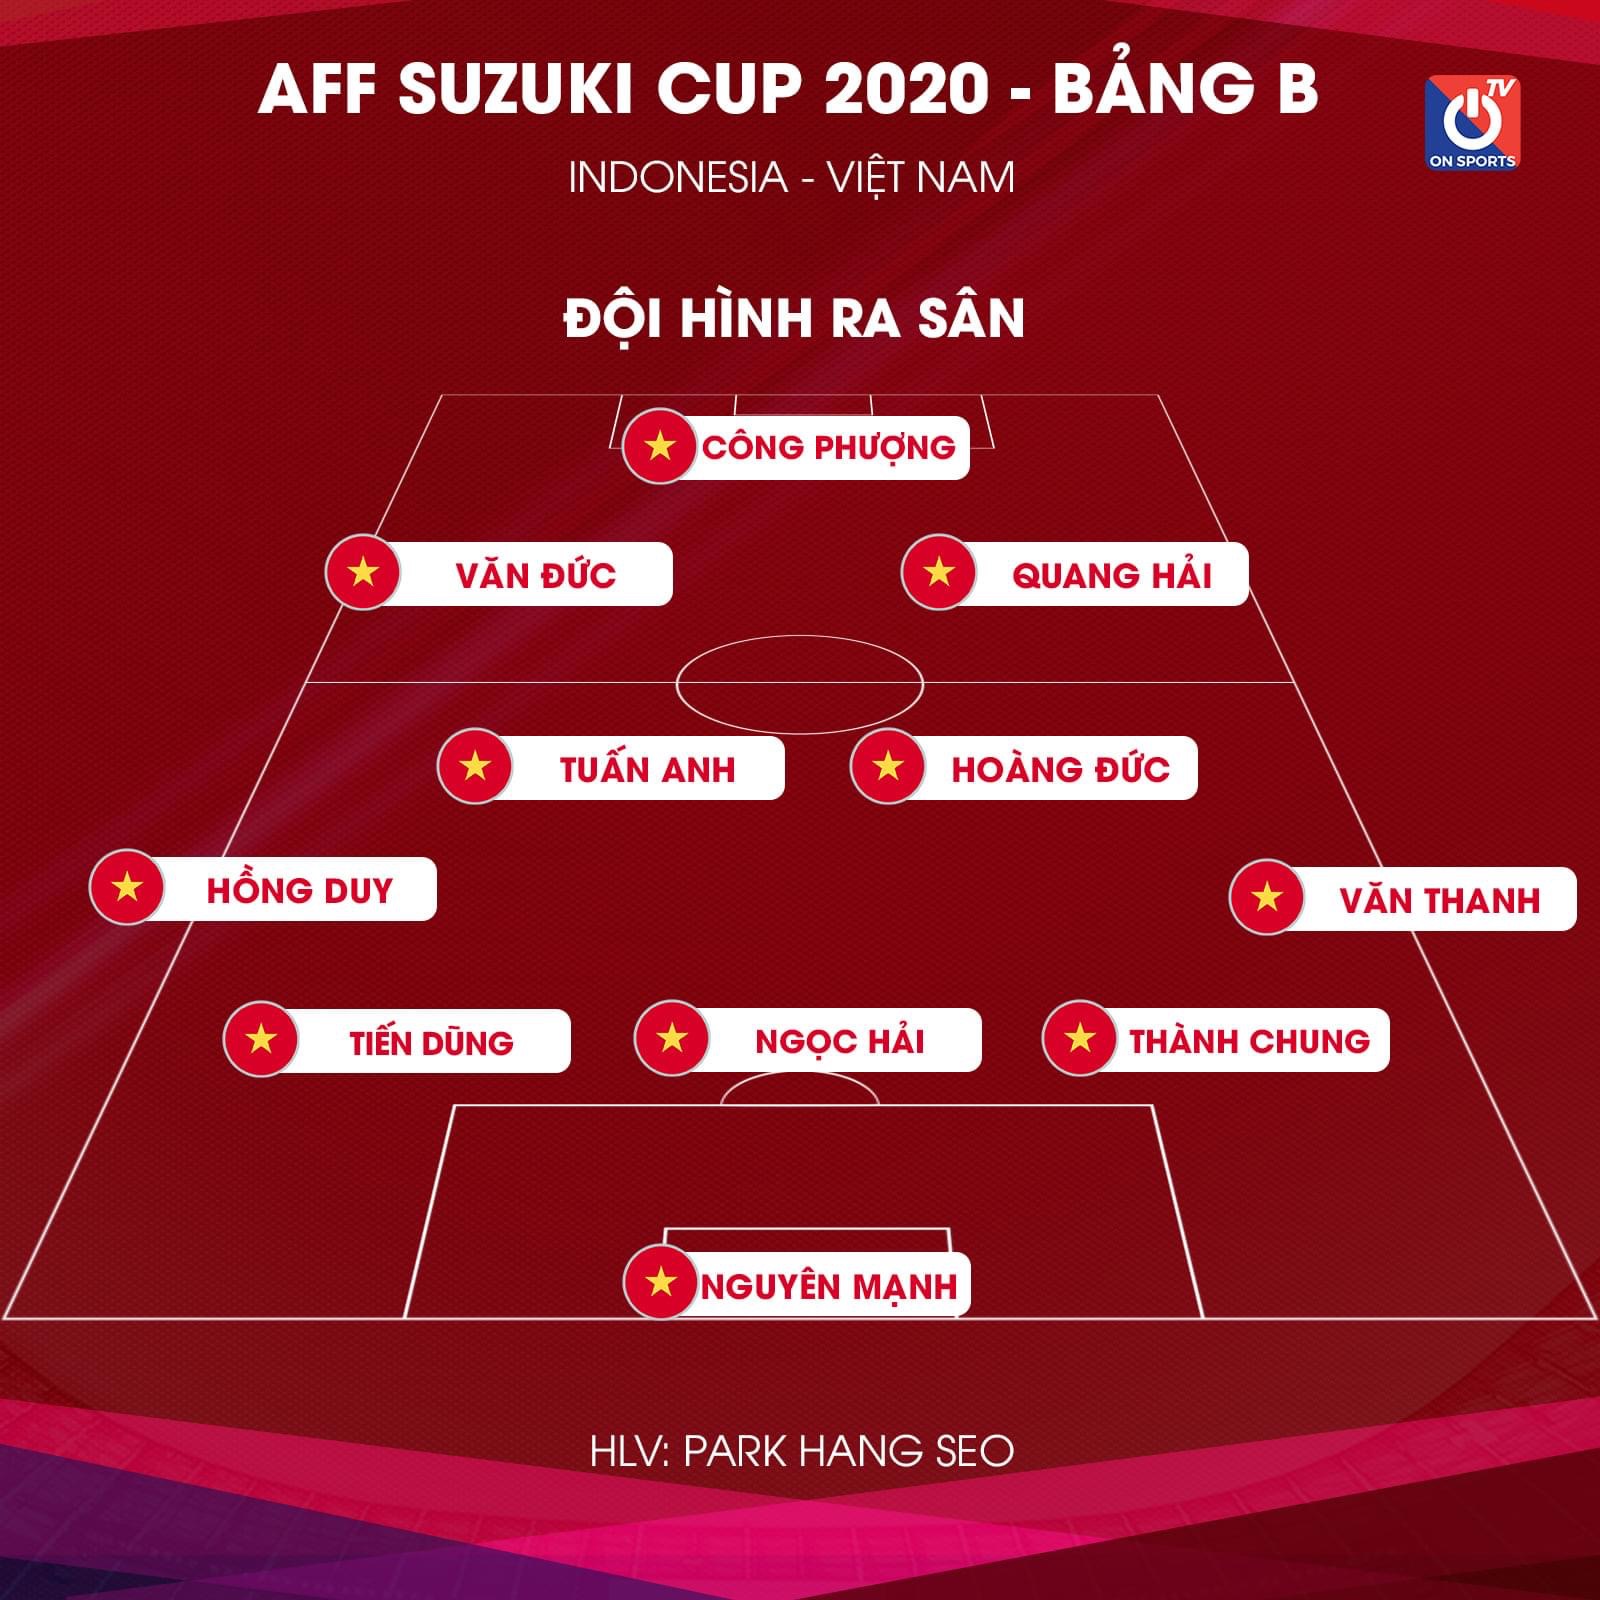 Đội hình ra sân chính thức Việt Nam vs Indonesia, 19h30 ngày 15/12 (cập nhật) - Ảnh 2